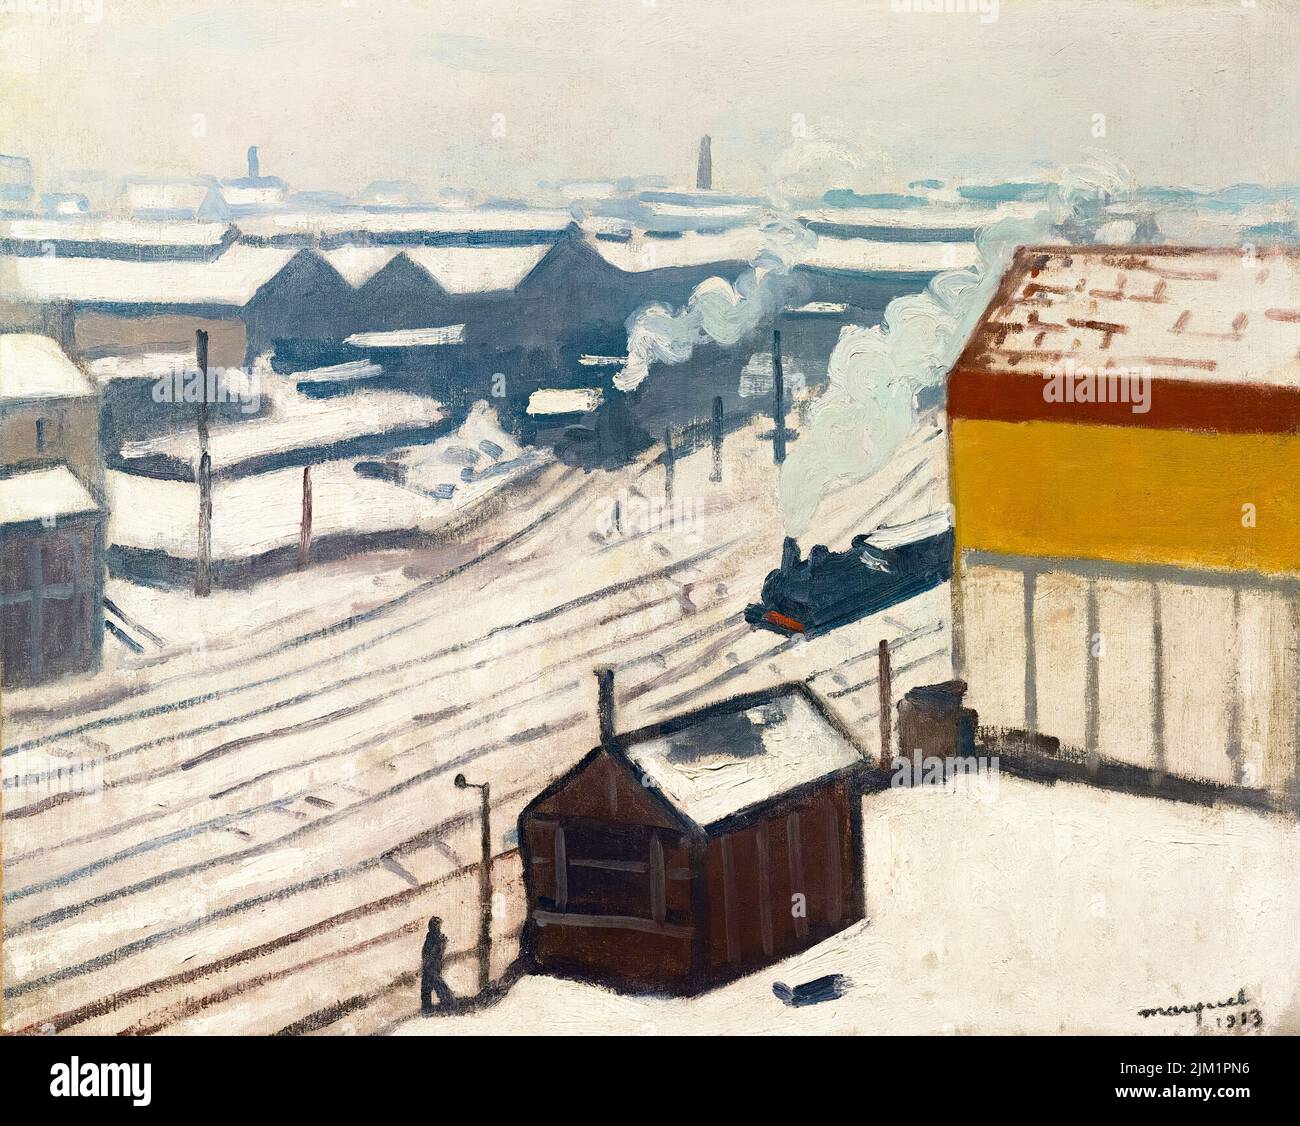 La Gare Montparnasse sous la neige, peinture à l'huile sur toile par Albert Marquet, 1913 Banque D'Images